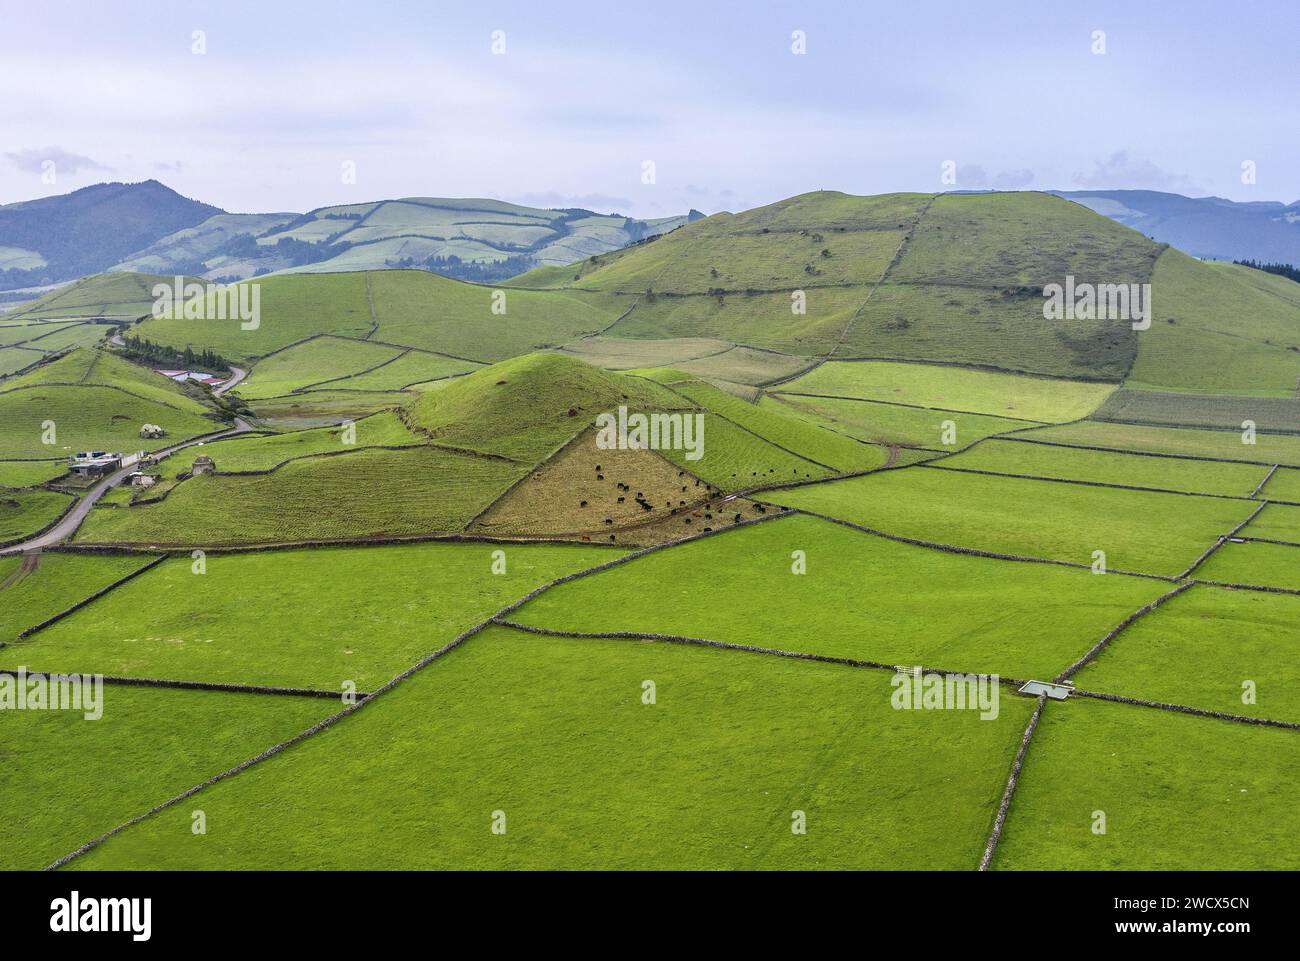 Portugal, archipel des Açores, île de Terceira, patchwork de pâturages verdoyants entourés de murs de pierres sèches au milieu d'anciens volcans Banque D'Images